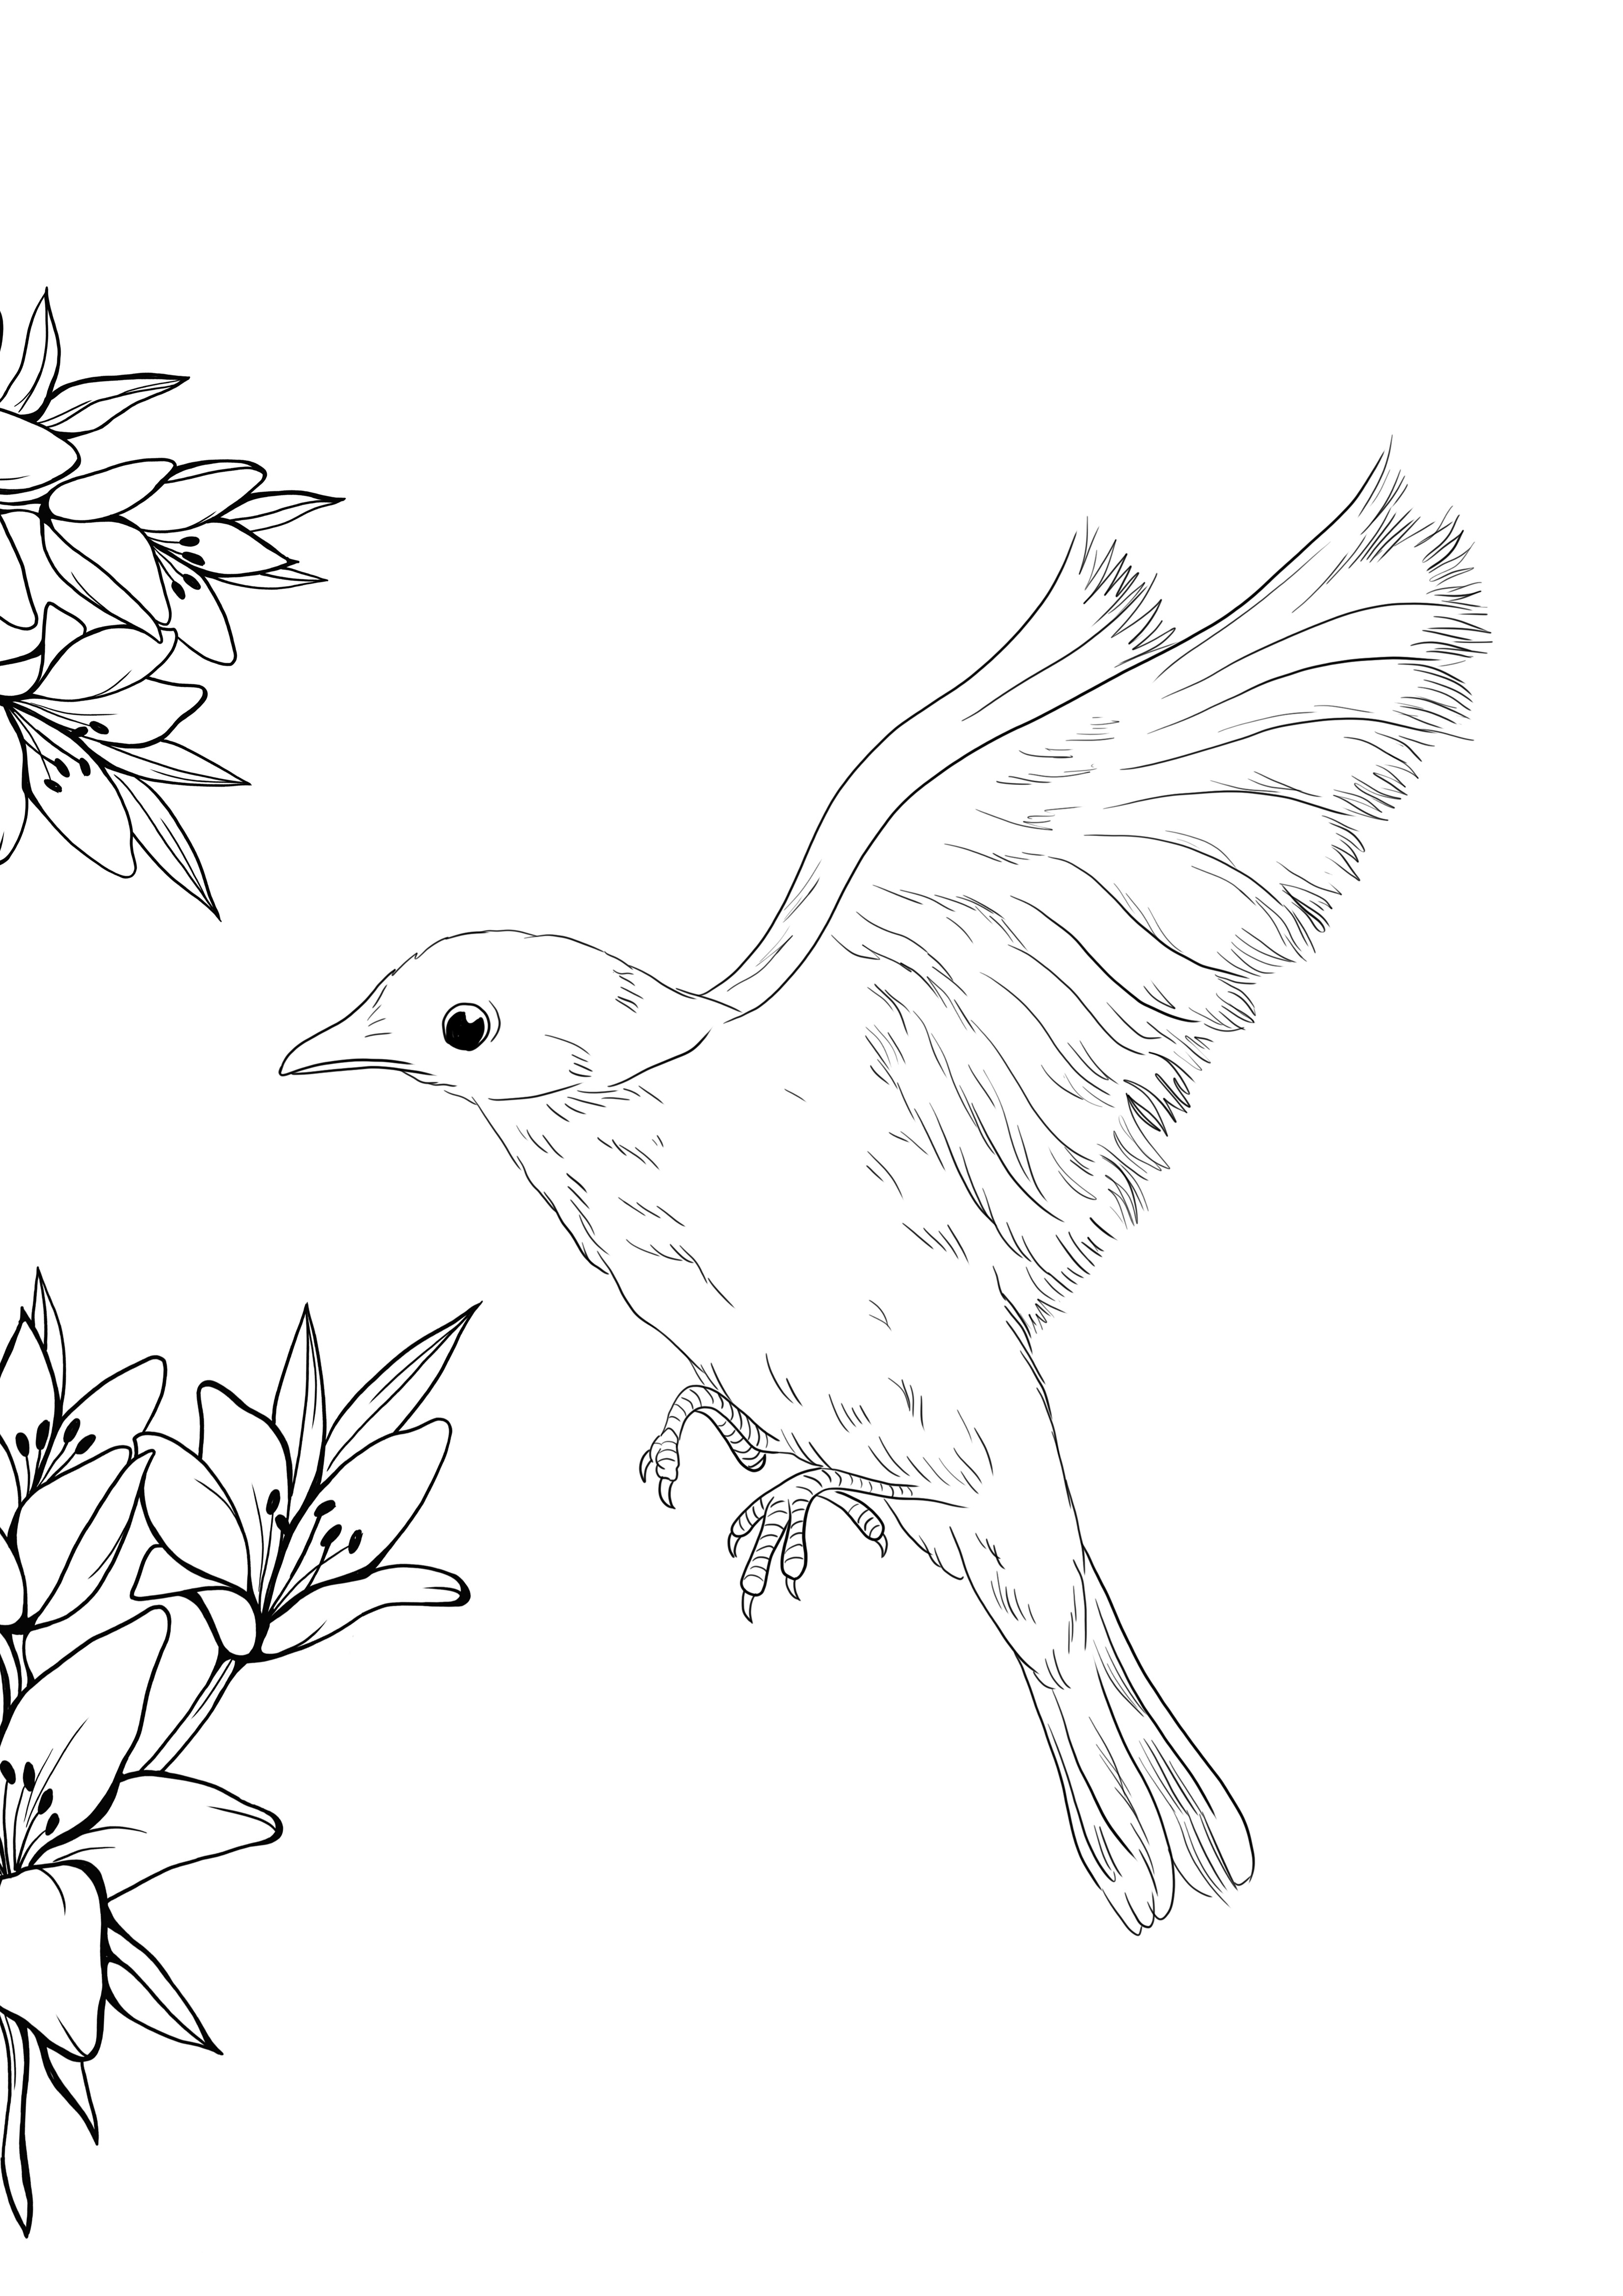 Desenhos para colorir gratuitos de Pássaros para imprimir e colorir -  Pássaros - Coloring Pages for Adults